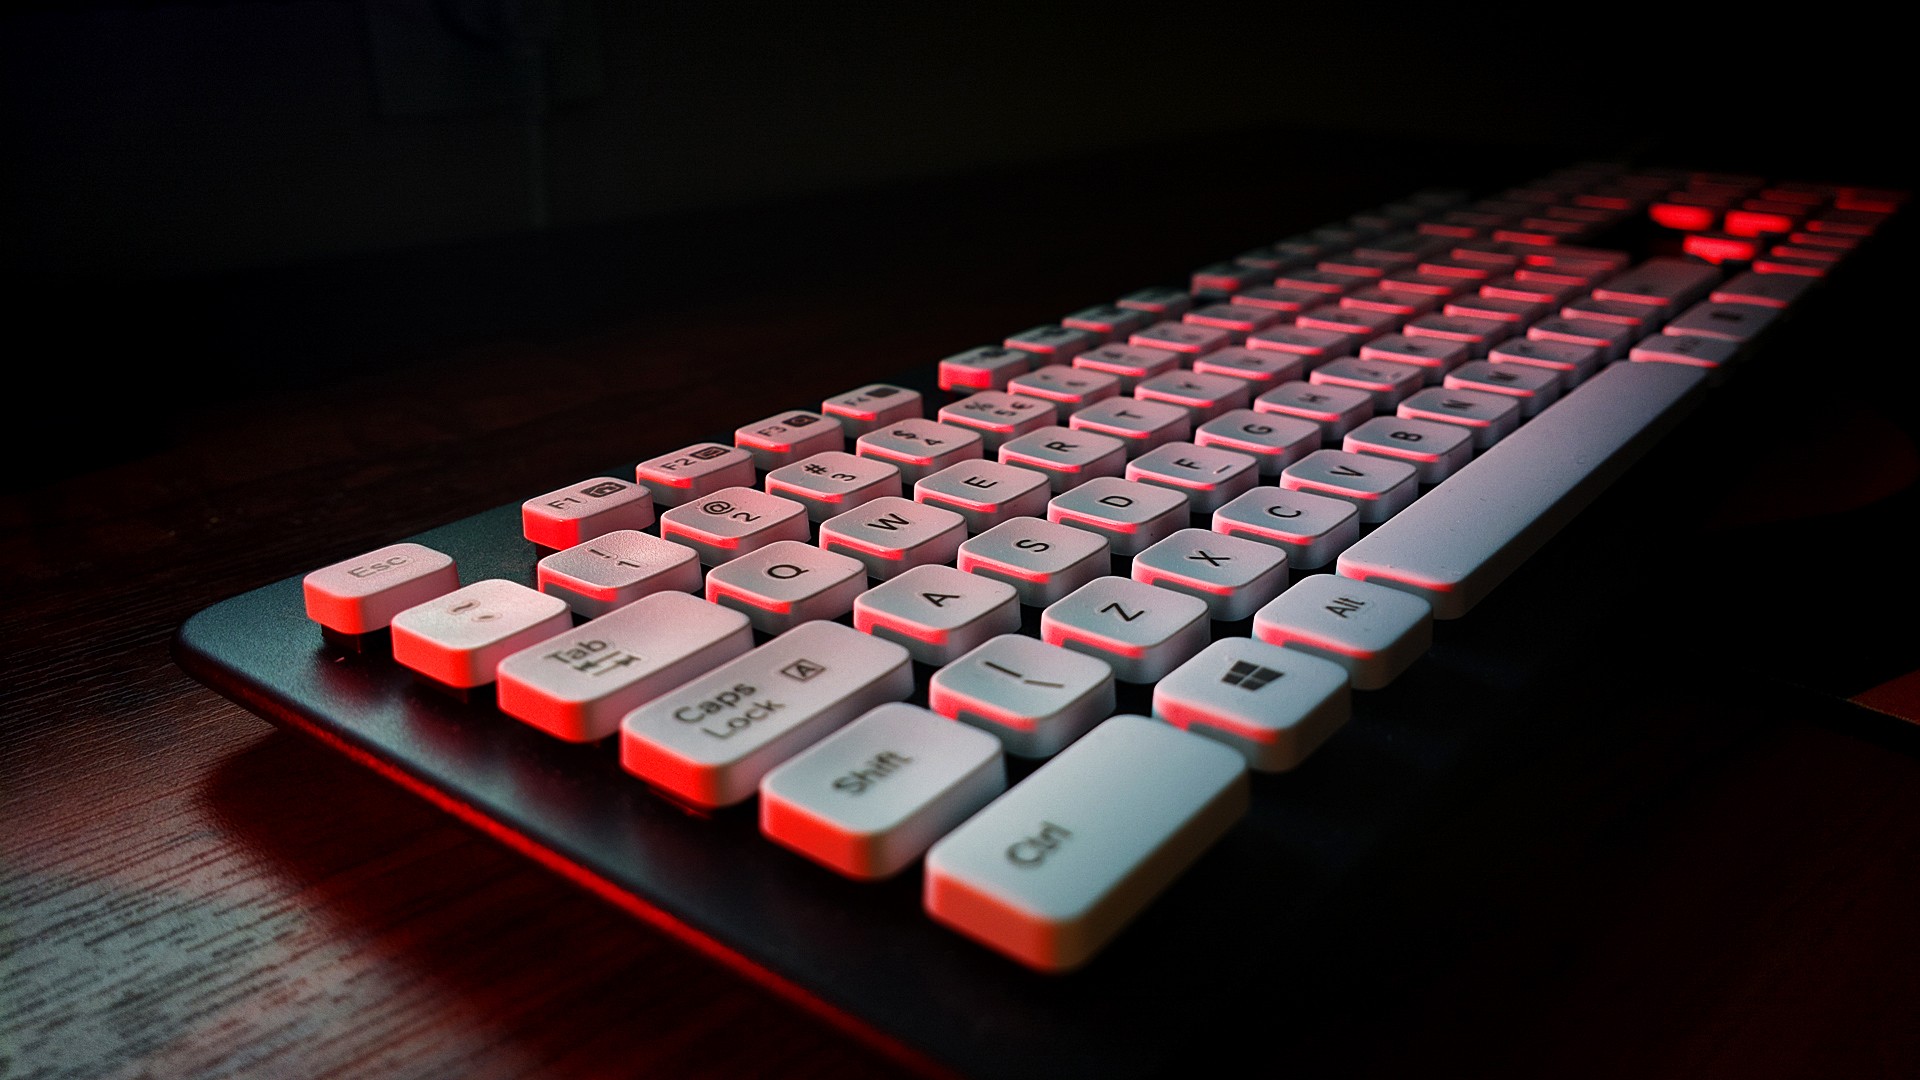 fond d'écran du clavier hd,clavier d'ordinateur,rouge,la technologie,équipement de bureau,lumière